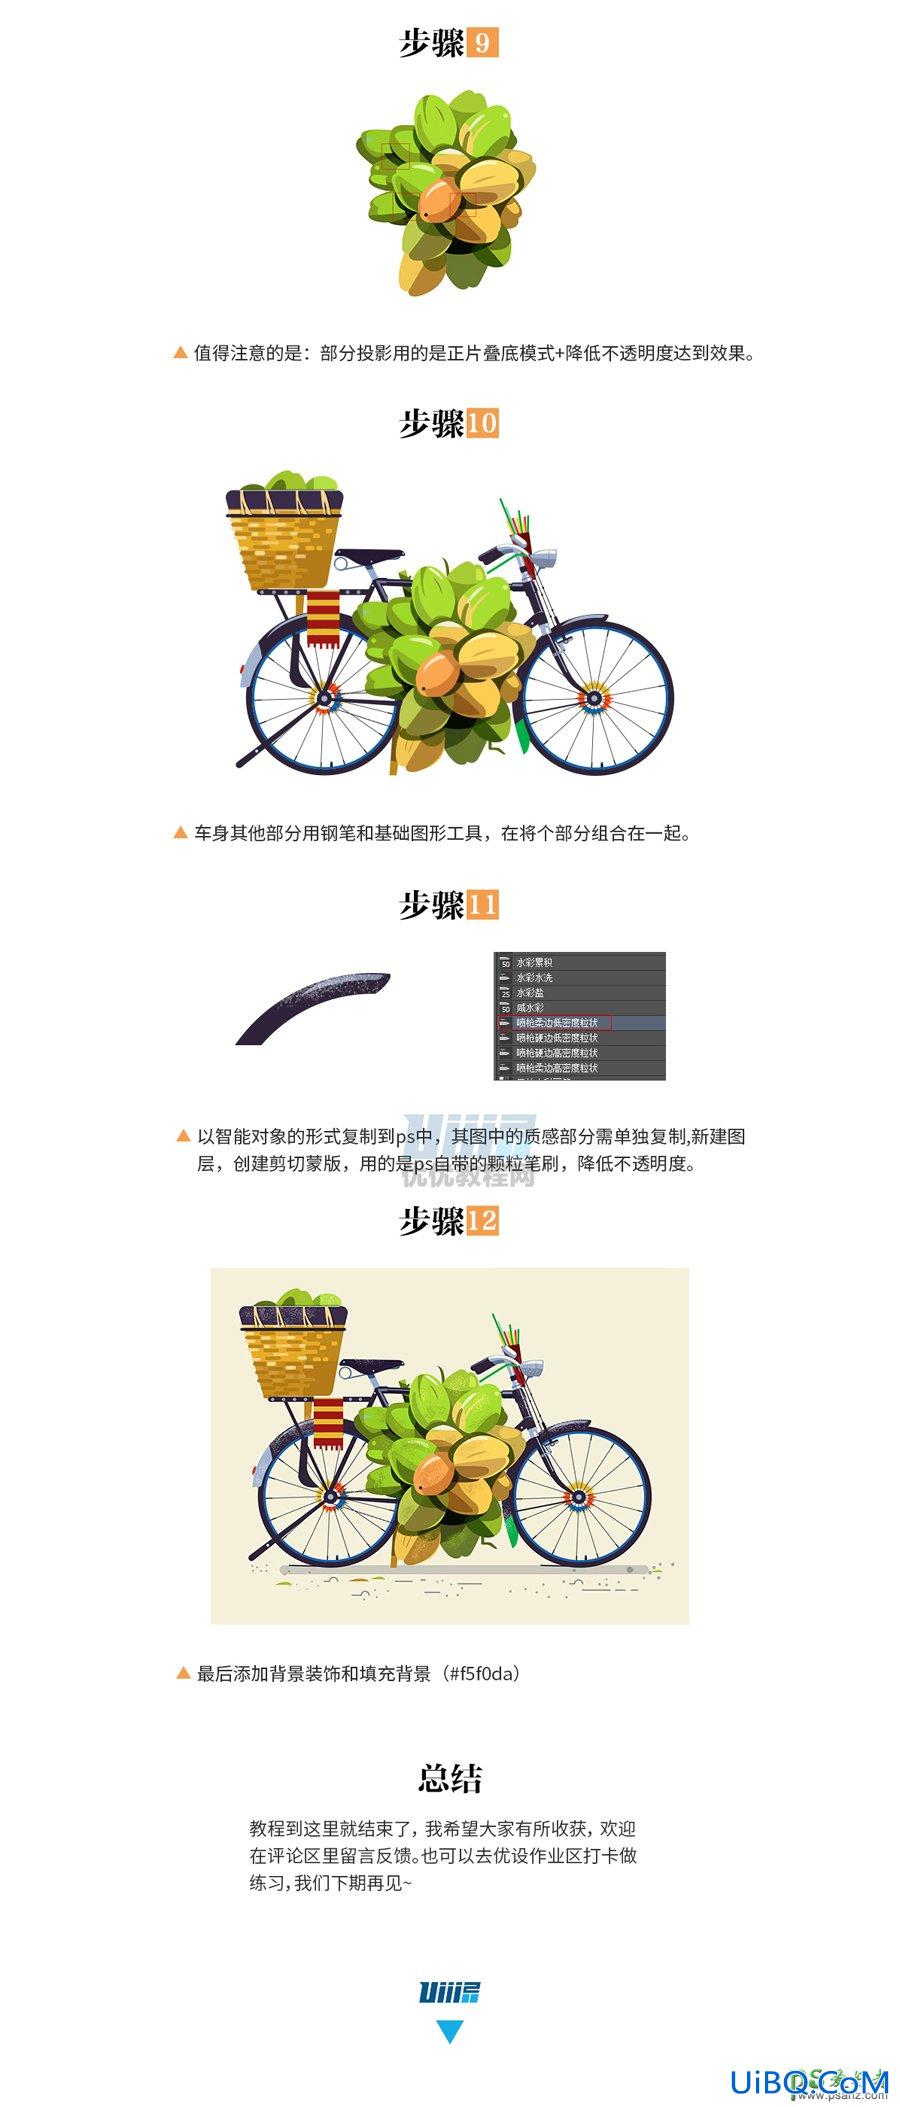 Photoshop结合AI软件绘制漂亮的自行车插画图片，绘制质感自行车素材图。